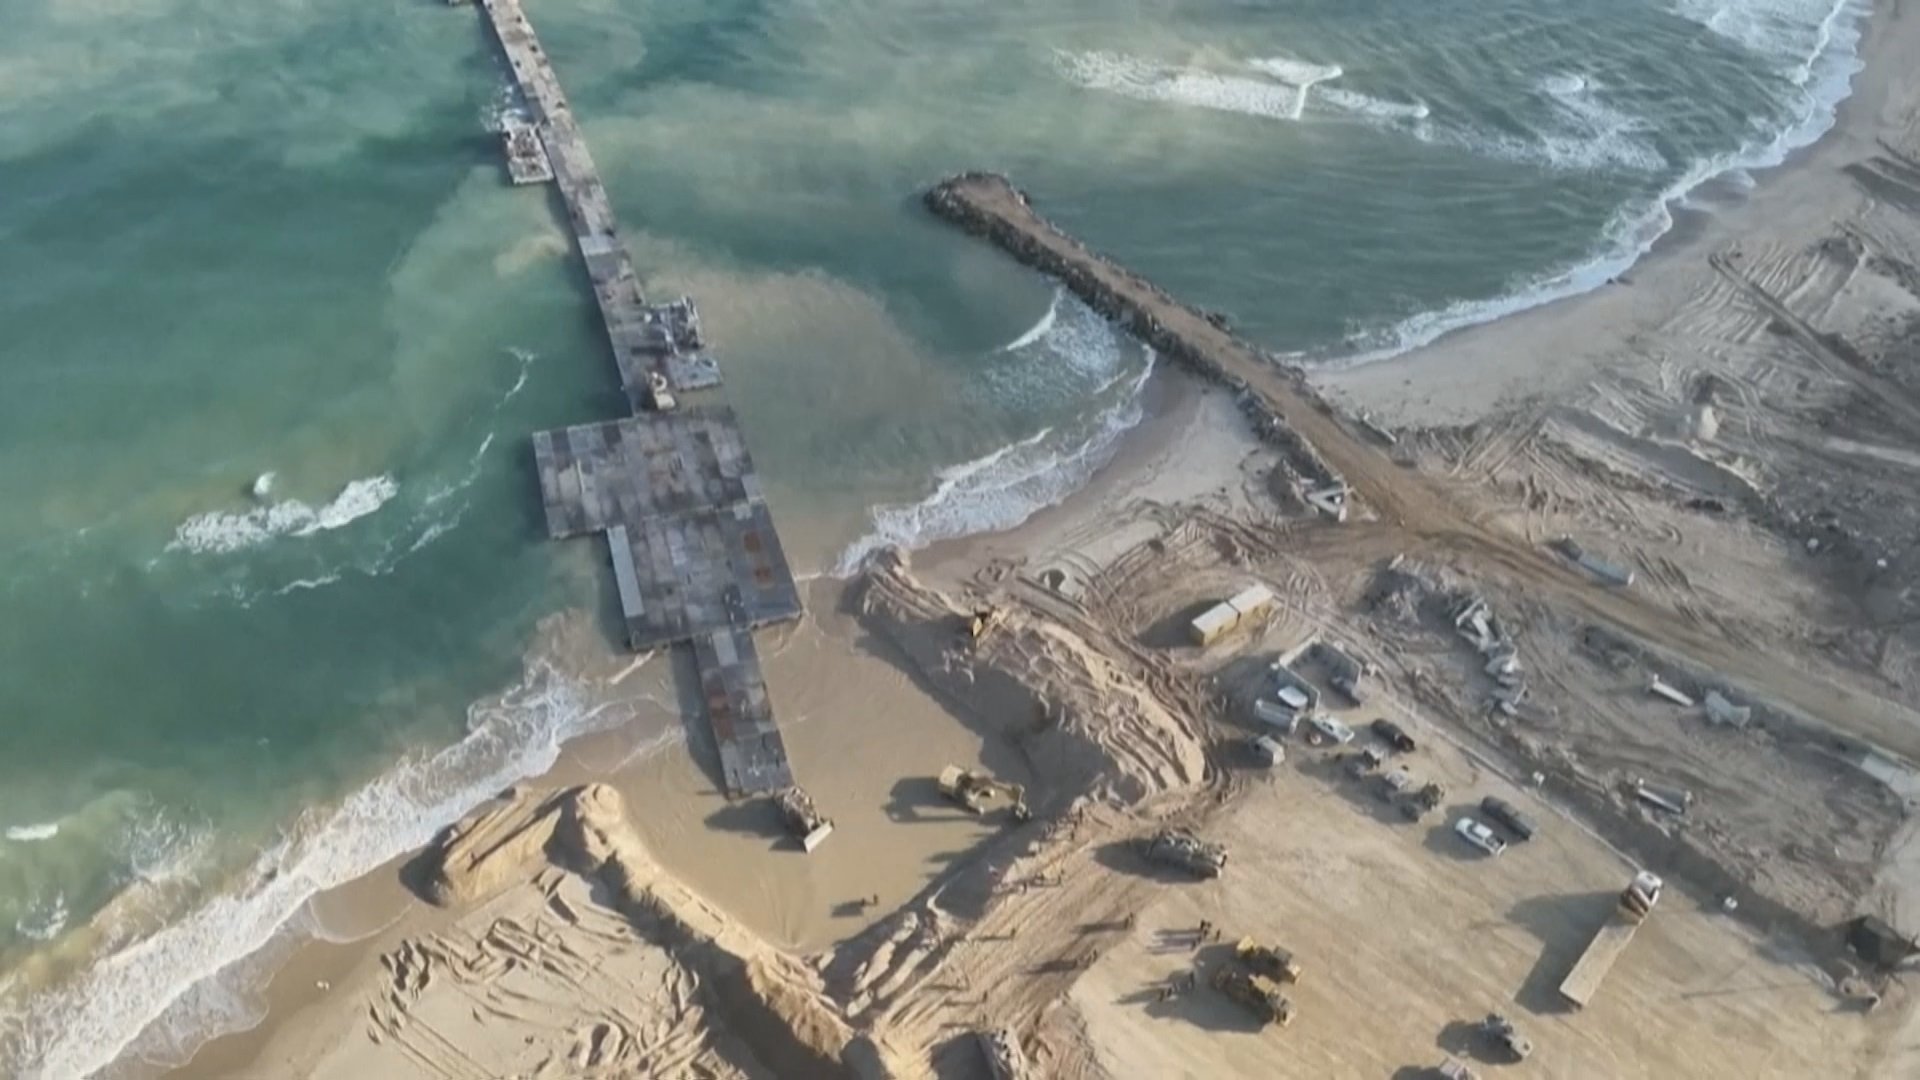 米軍 ガザに支援物資搬入用の仮設桟橋を永久撤去へ 悪天候・高波で度重なる損傷 約365億円で建設も稼働は20日間